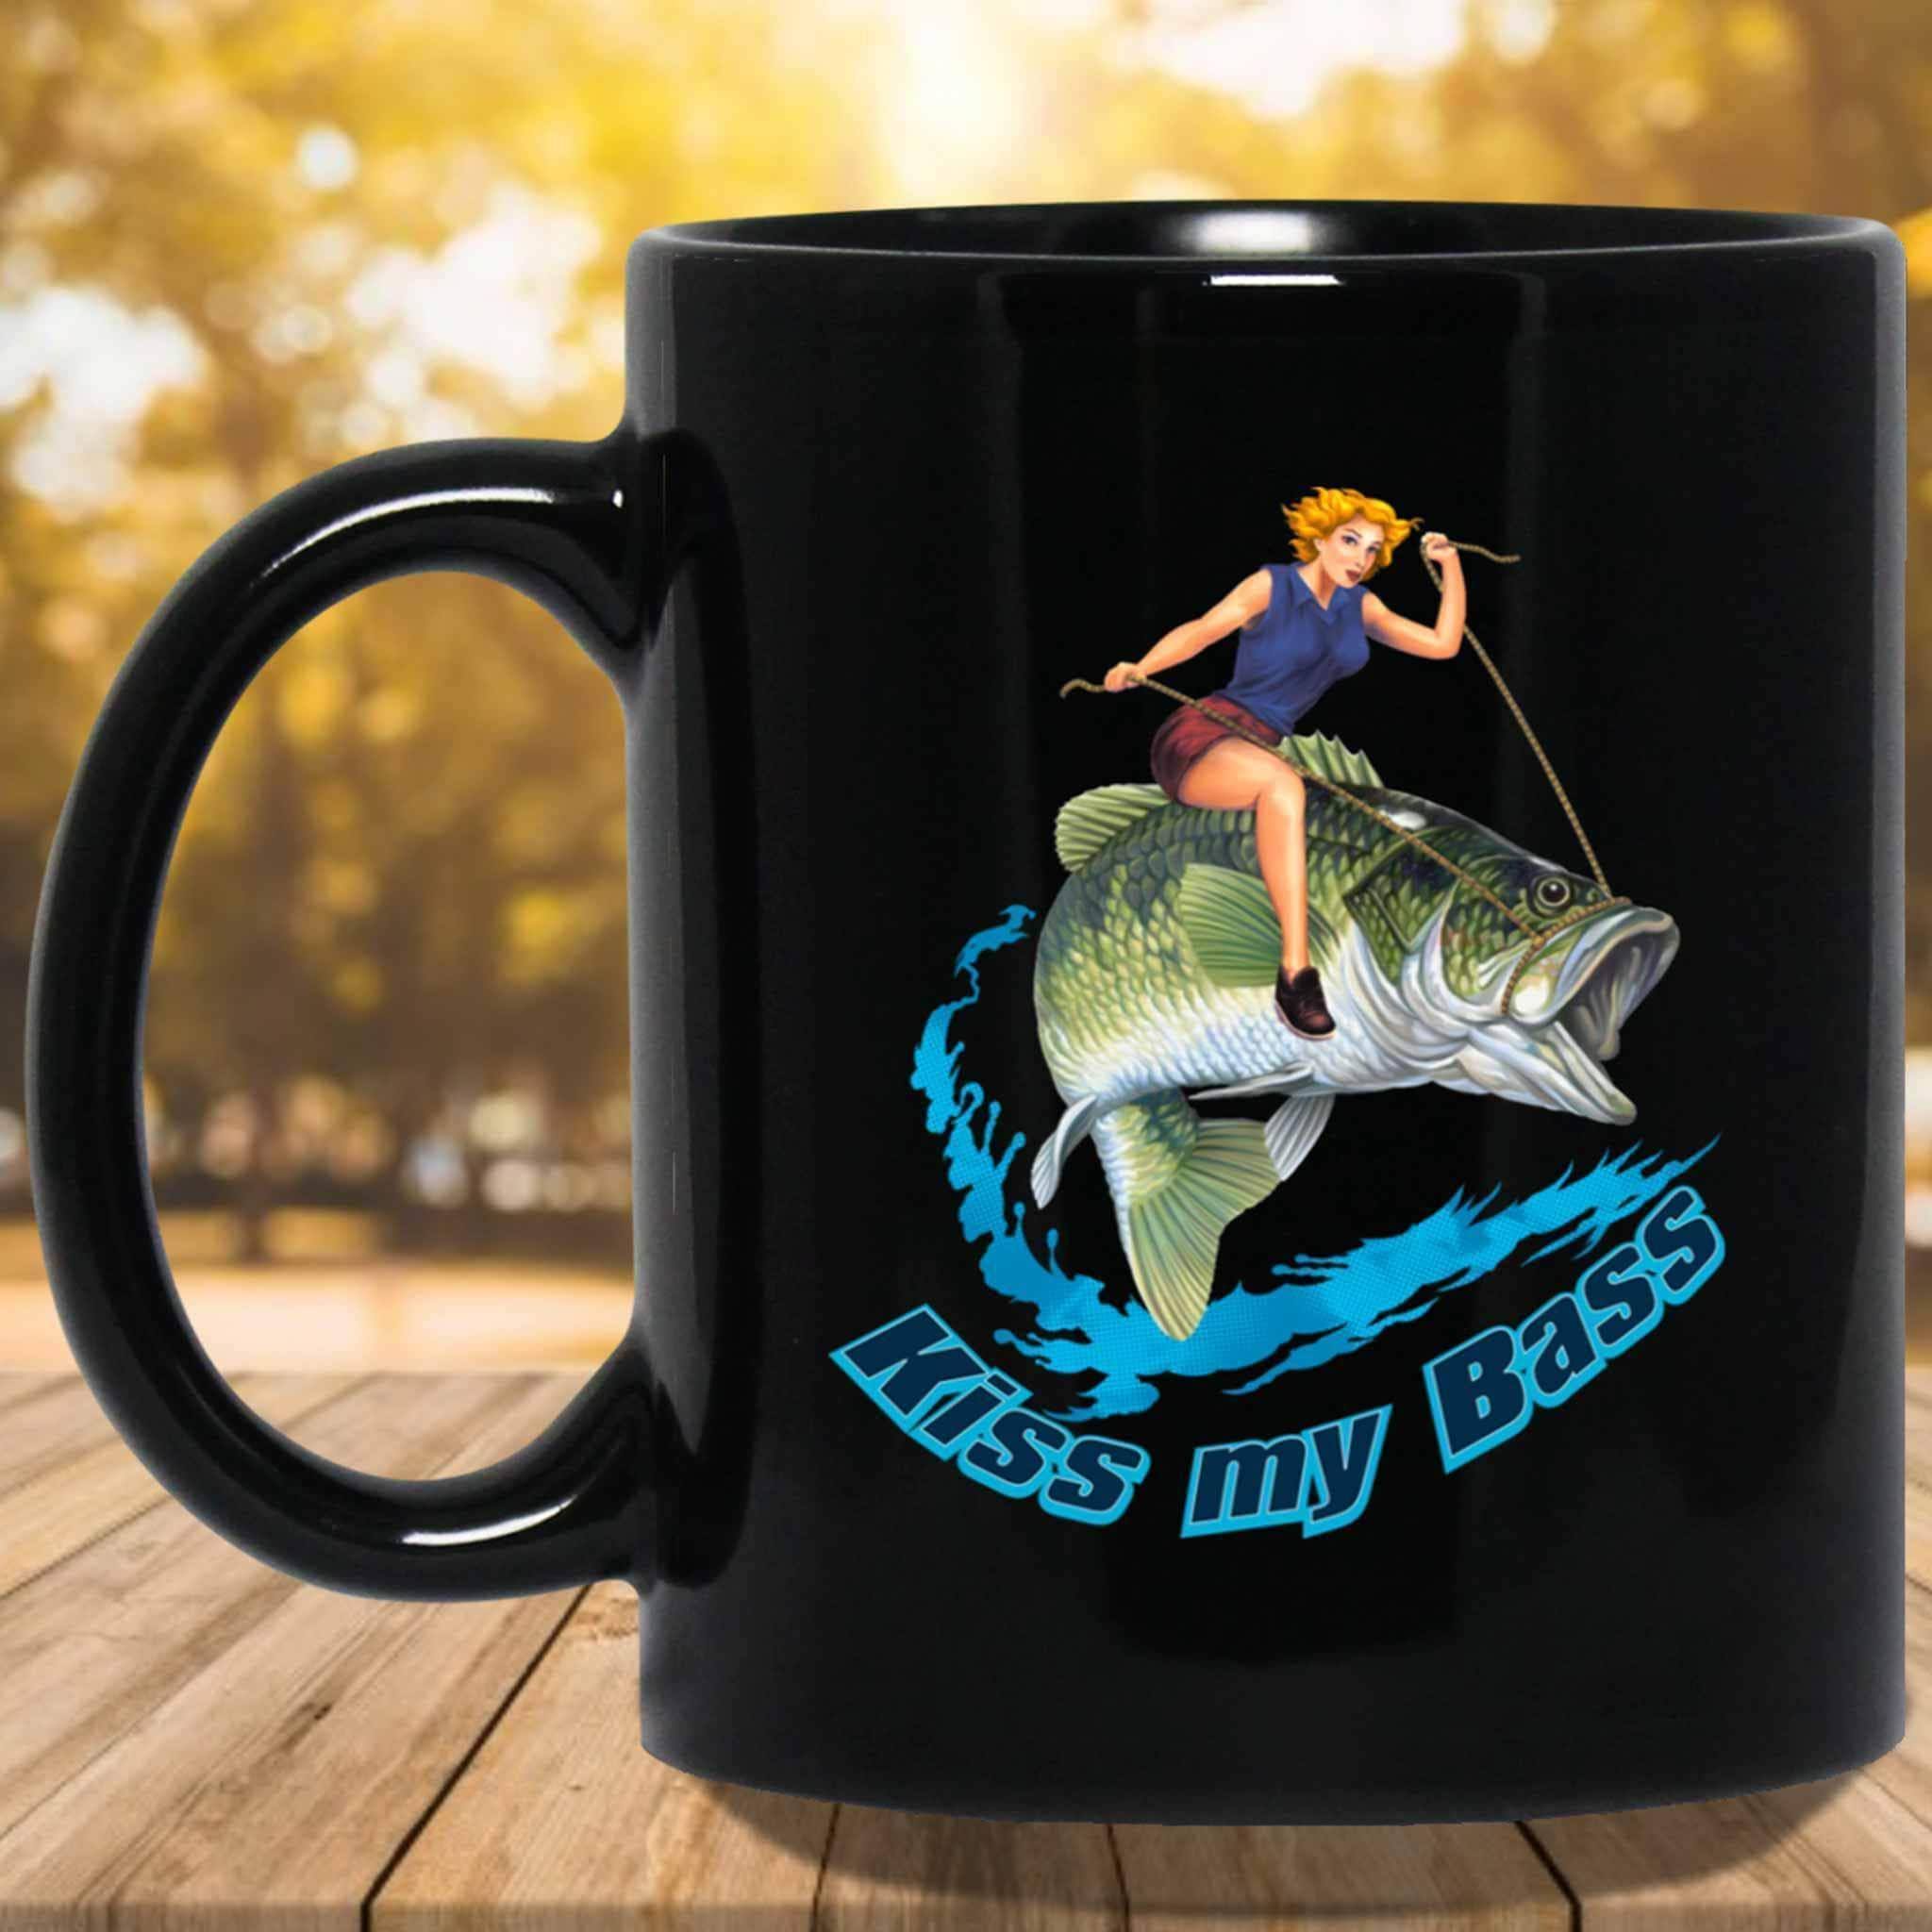 Funny Fishing For Men Women Bass Fly Fishing Fisherman Ceramic Mug